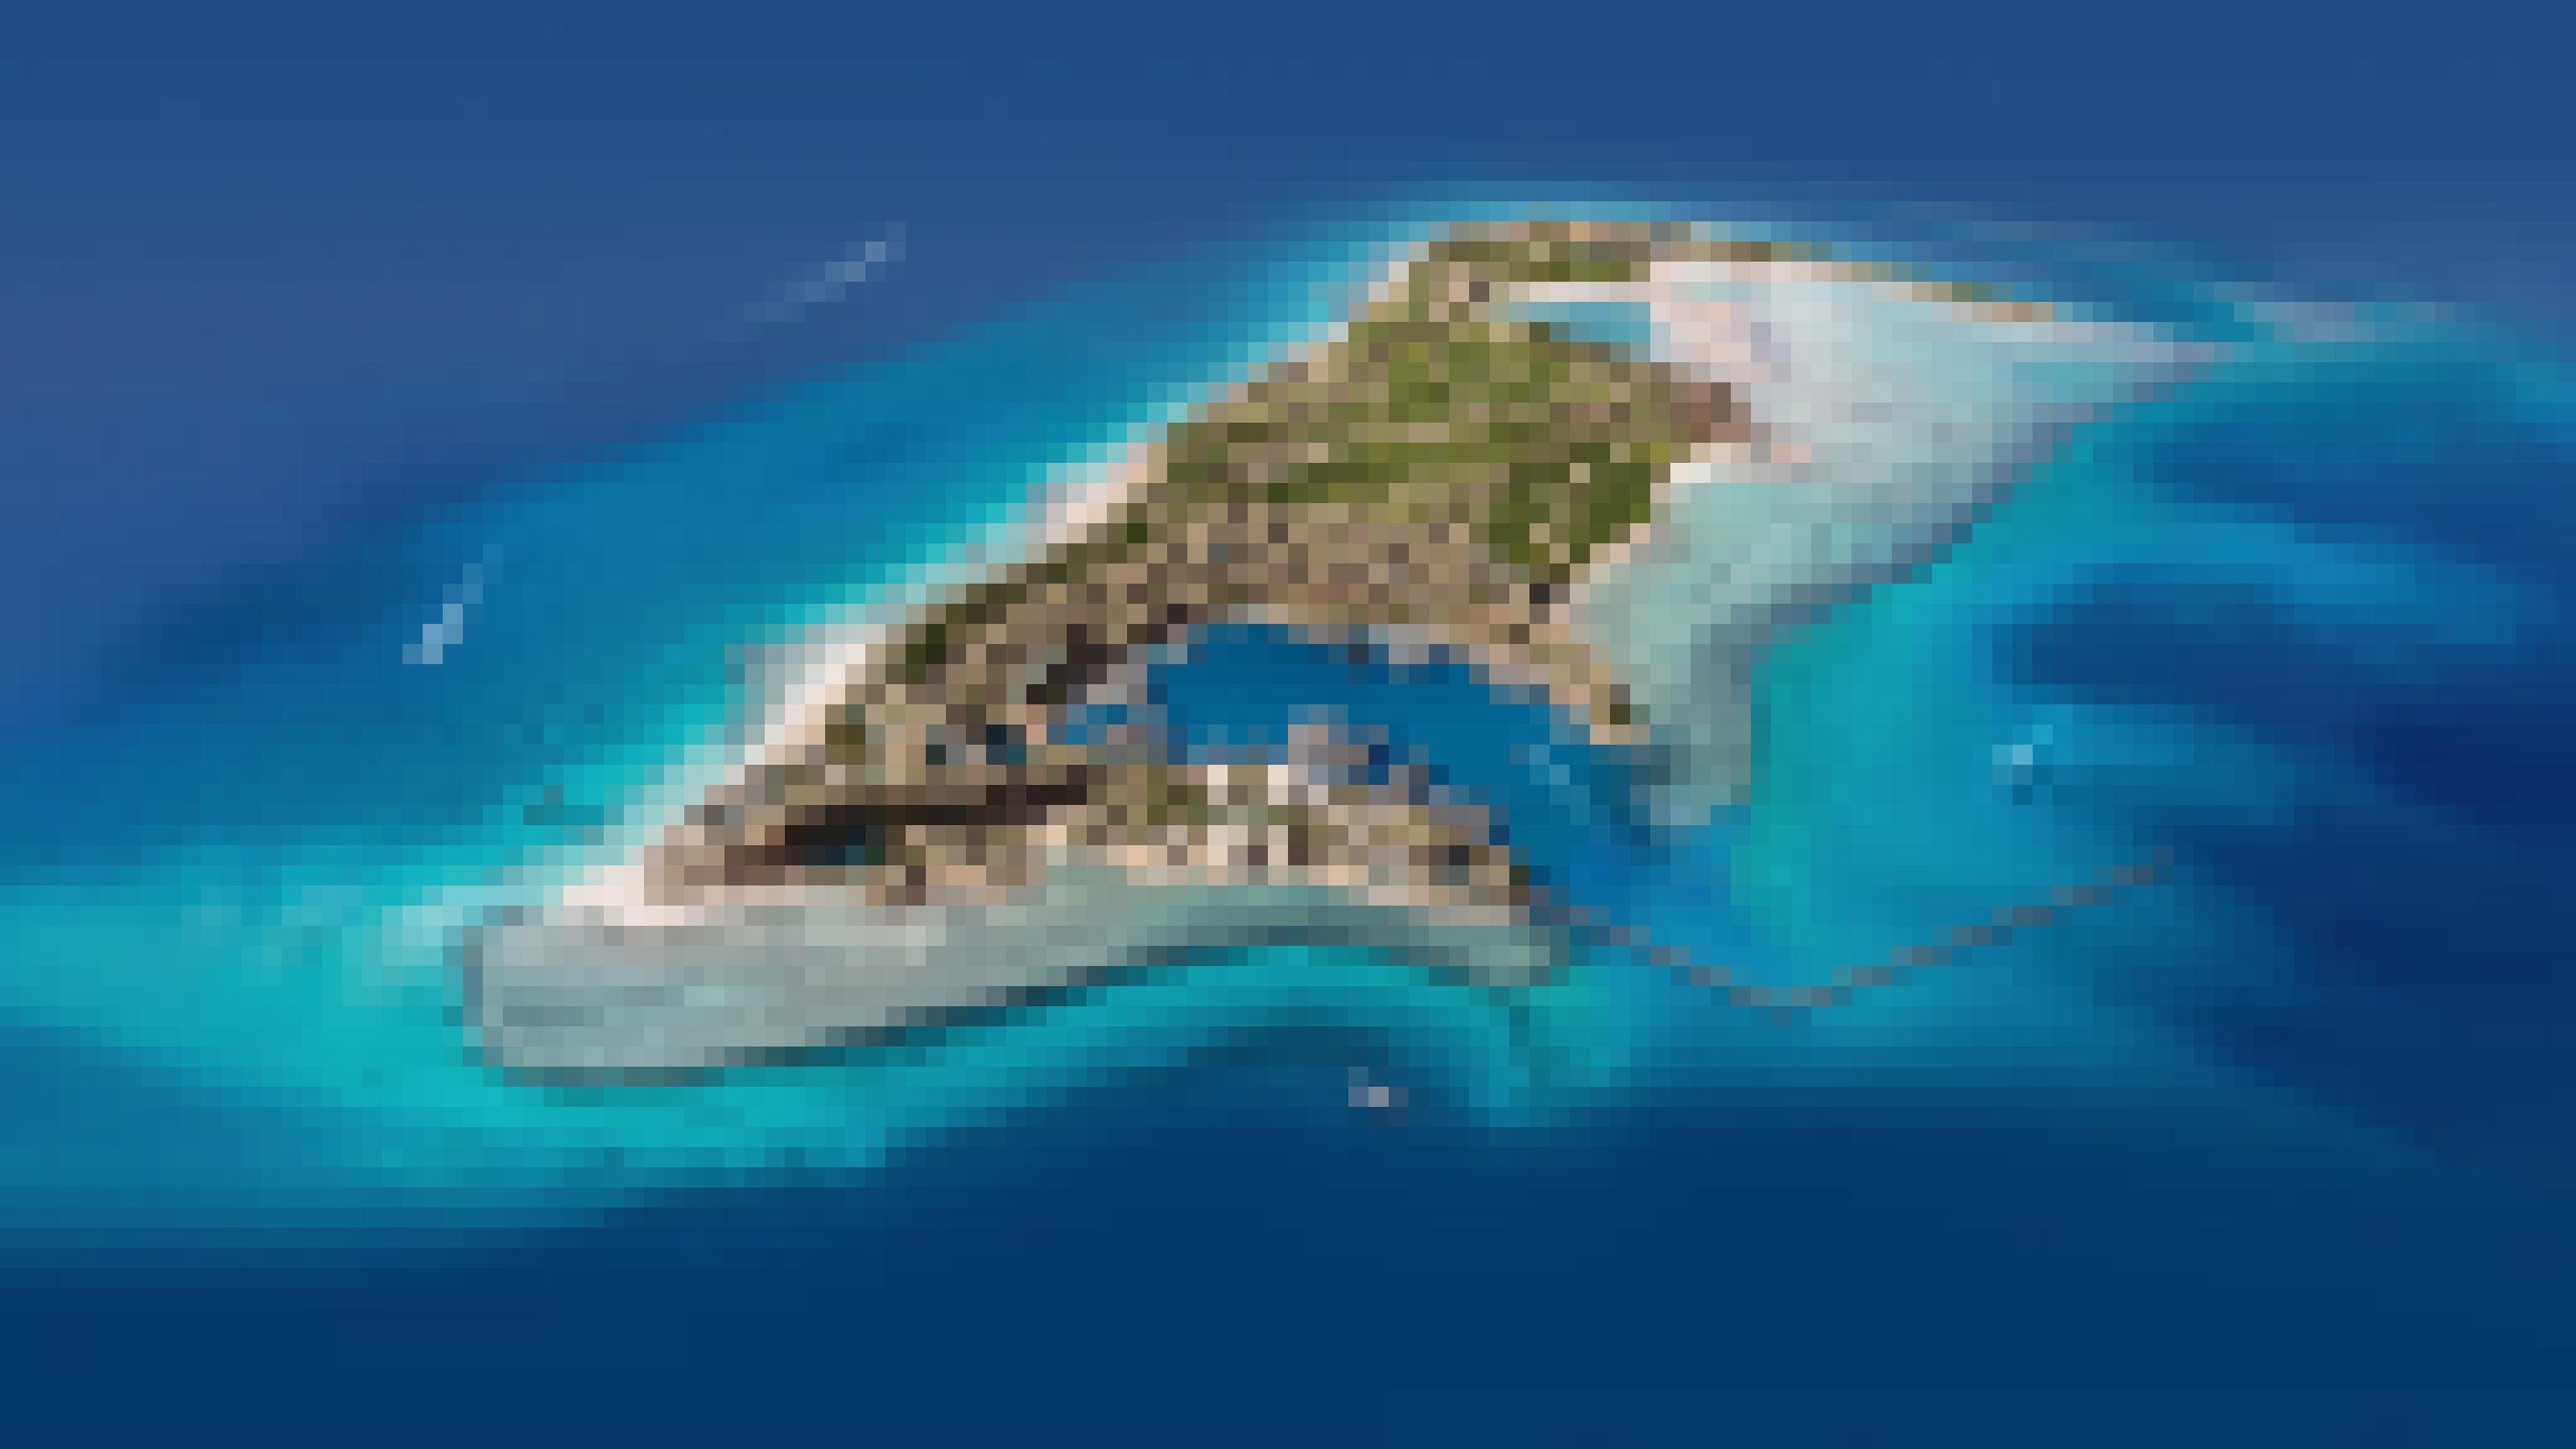 Man sieht die geplante Insel Sindalah aus der Vogelperspektive. Sie liegt im blauen Meerwasser.